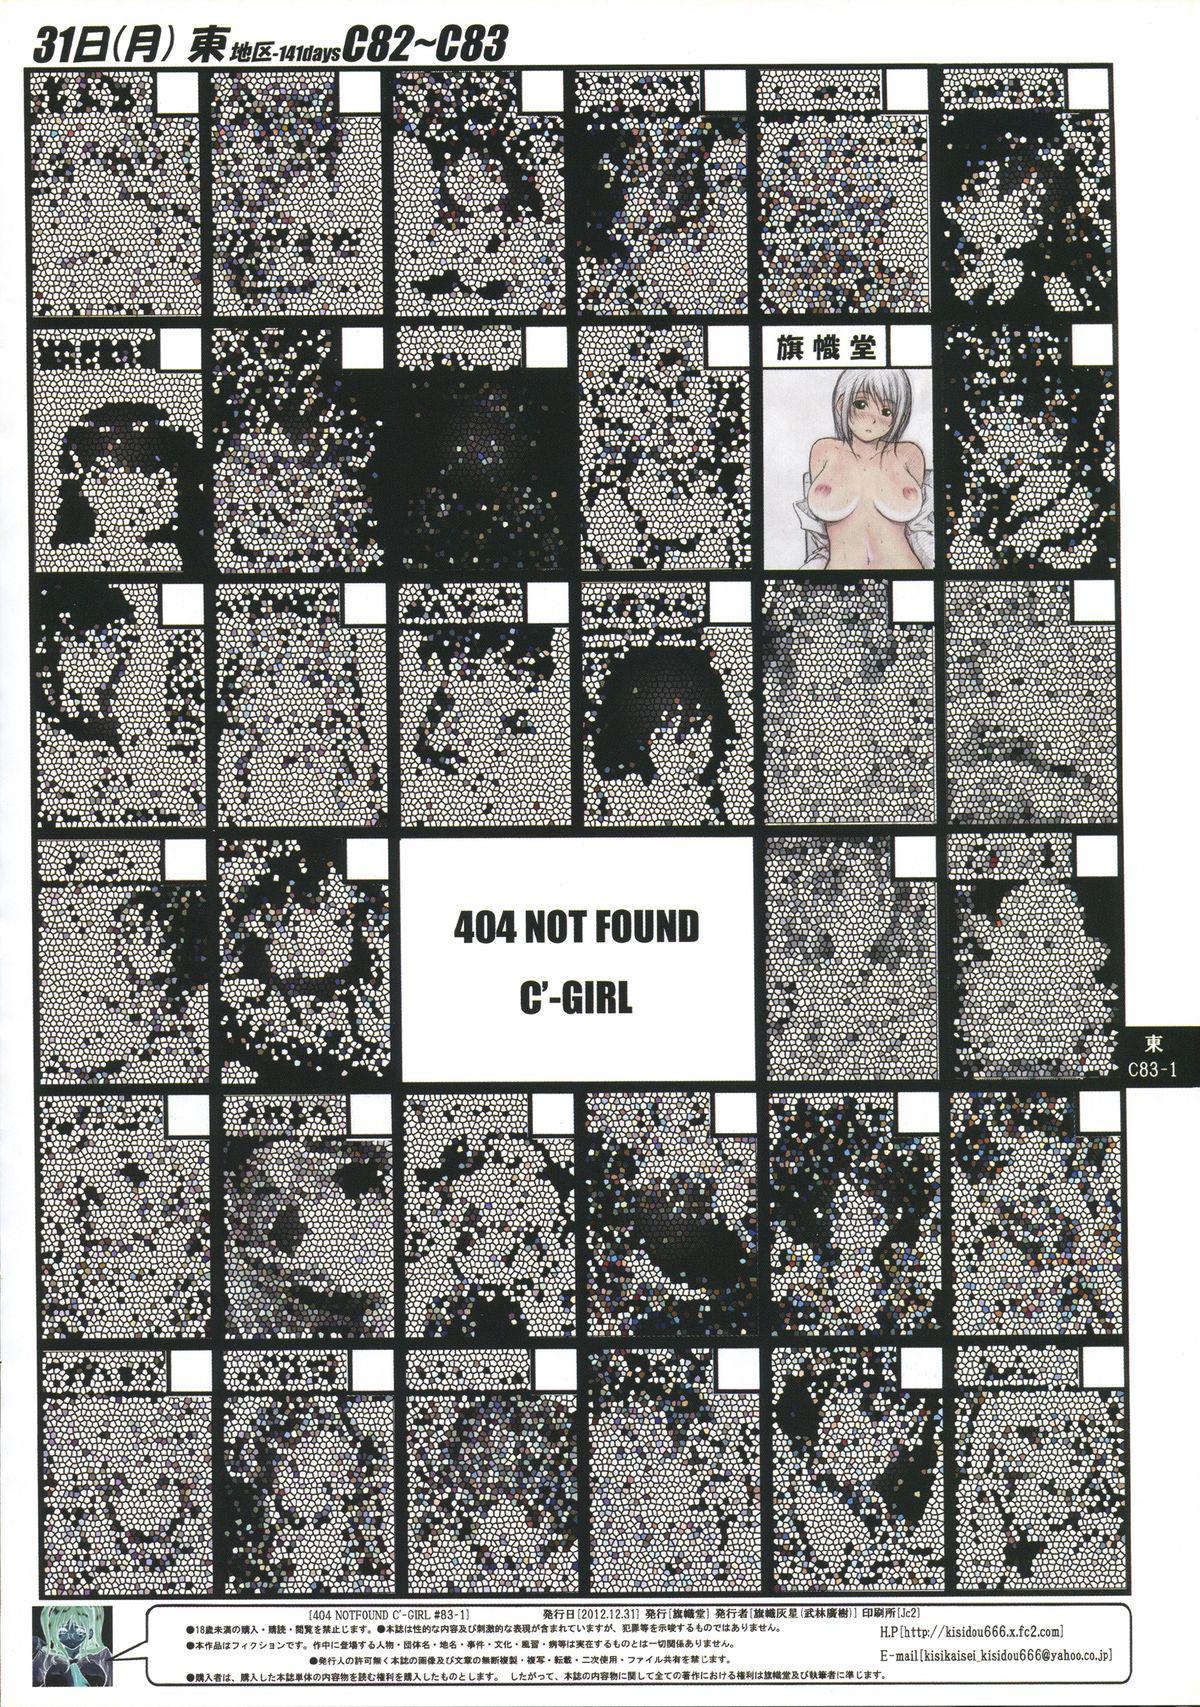 Affair (C83) [Kisidou (Takebayasi Hiroki, Kishi Kasei)] 404 NOT FOUND C'-GIRL #83-1 [English] =SNP= Mexico - Page 2